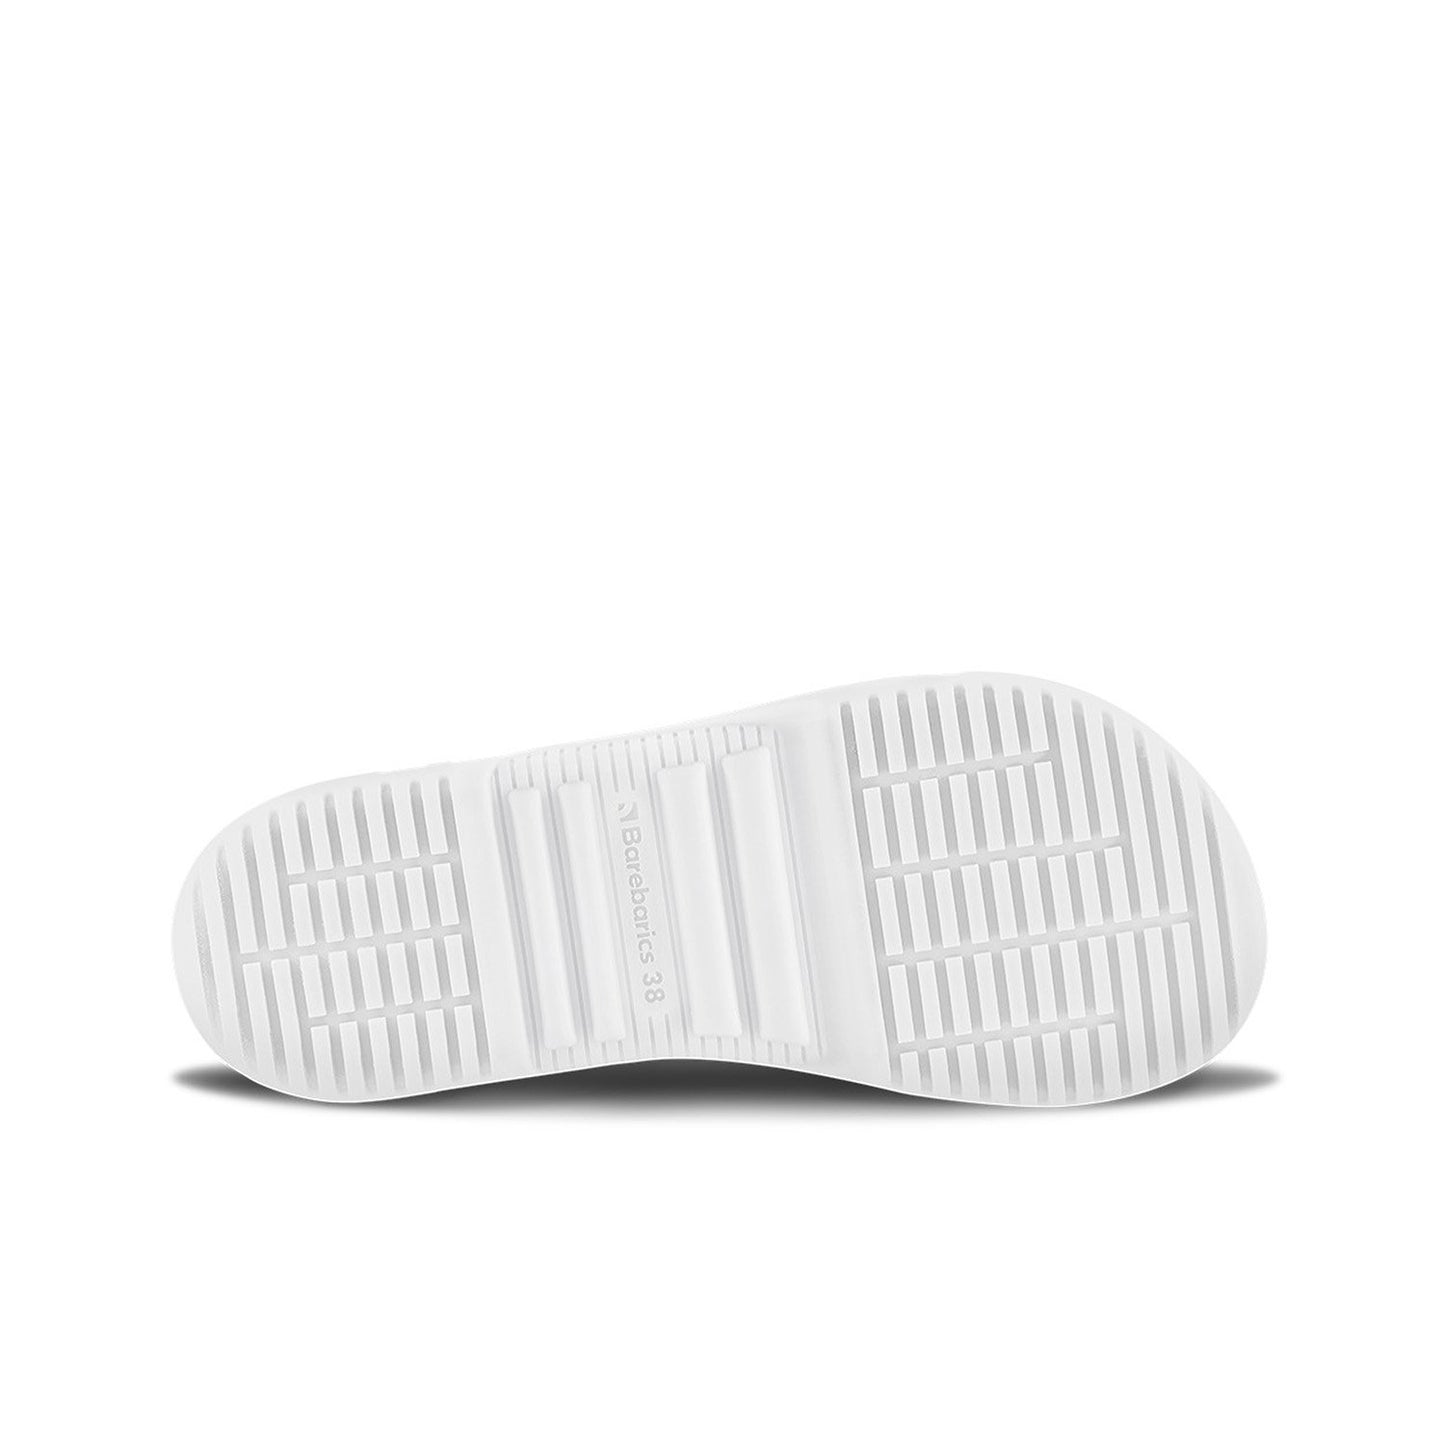 Barebarics Revive Barefoot Sneakers - Black & White